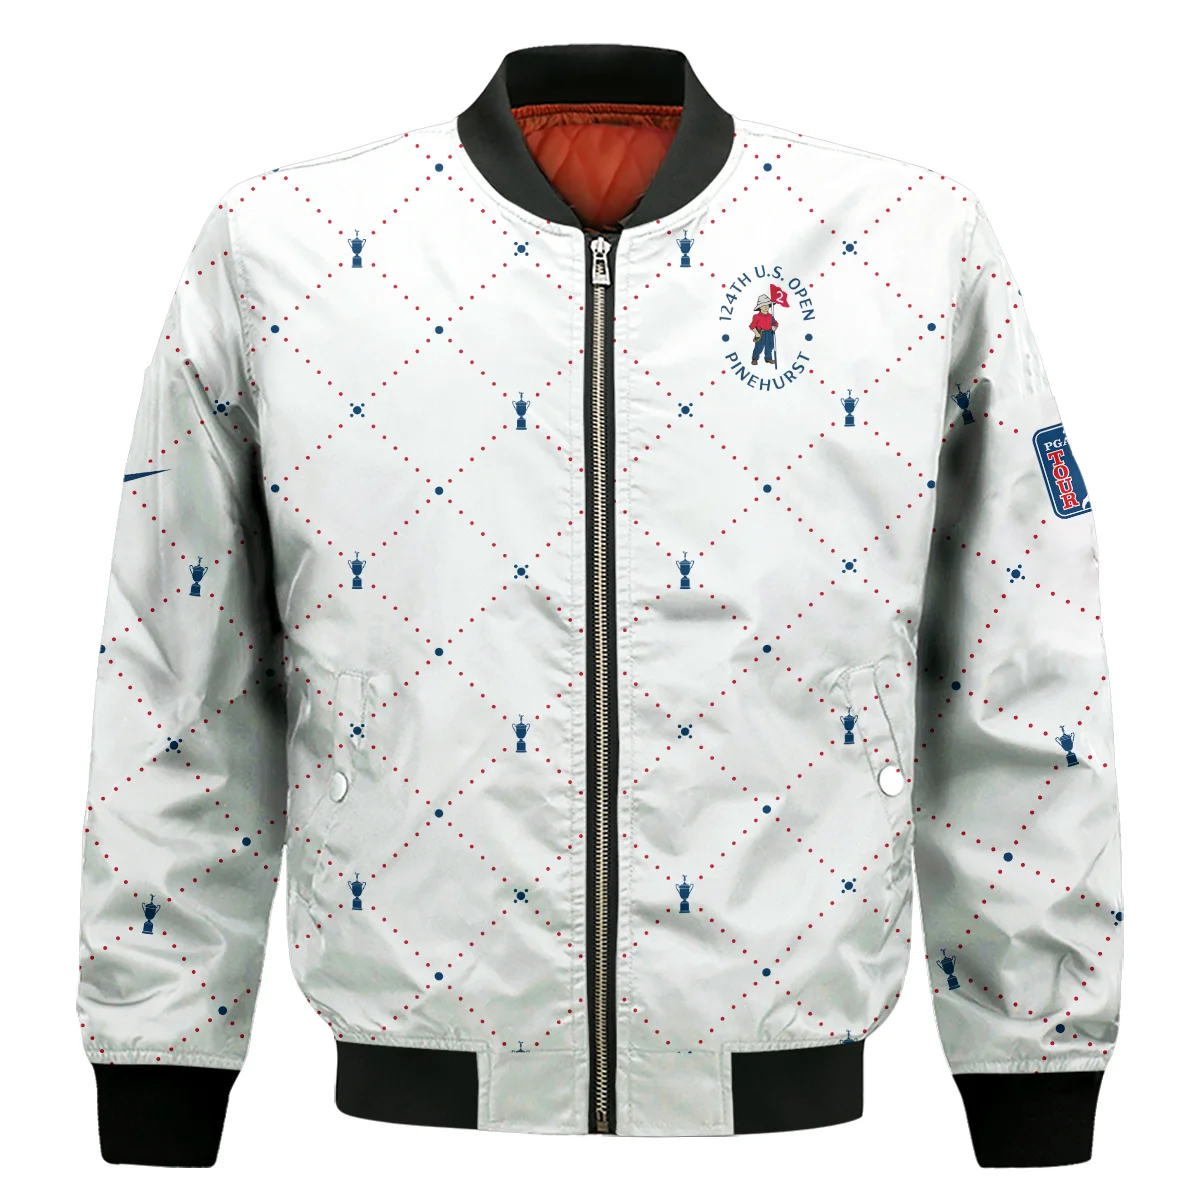 Argyle Pattern With Cup 124th U.S. Open Pinehurst Nike Sleeveless Jacket Style Classic Sleeveless Jacket